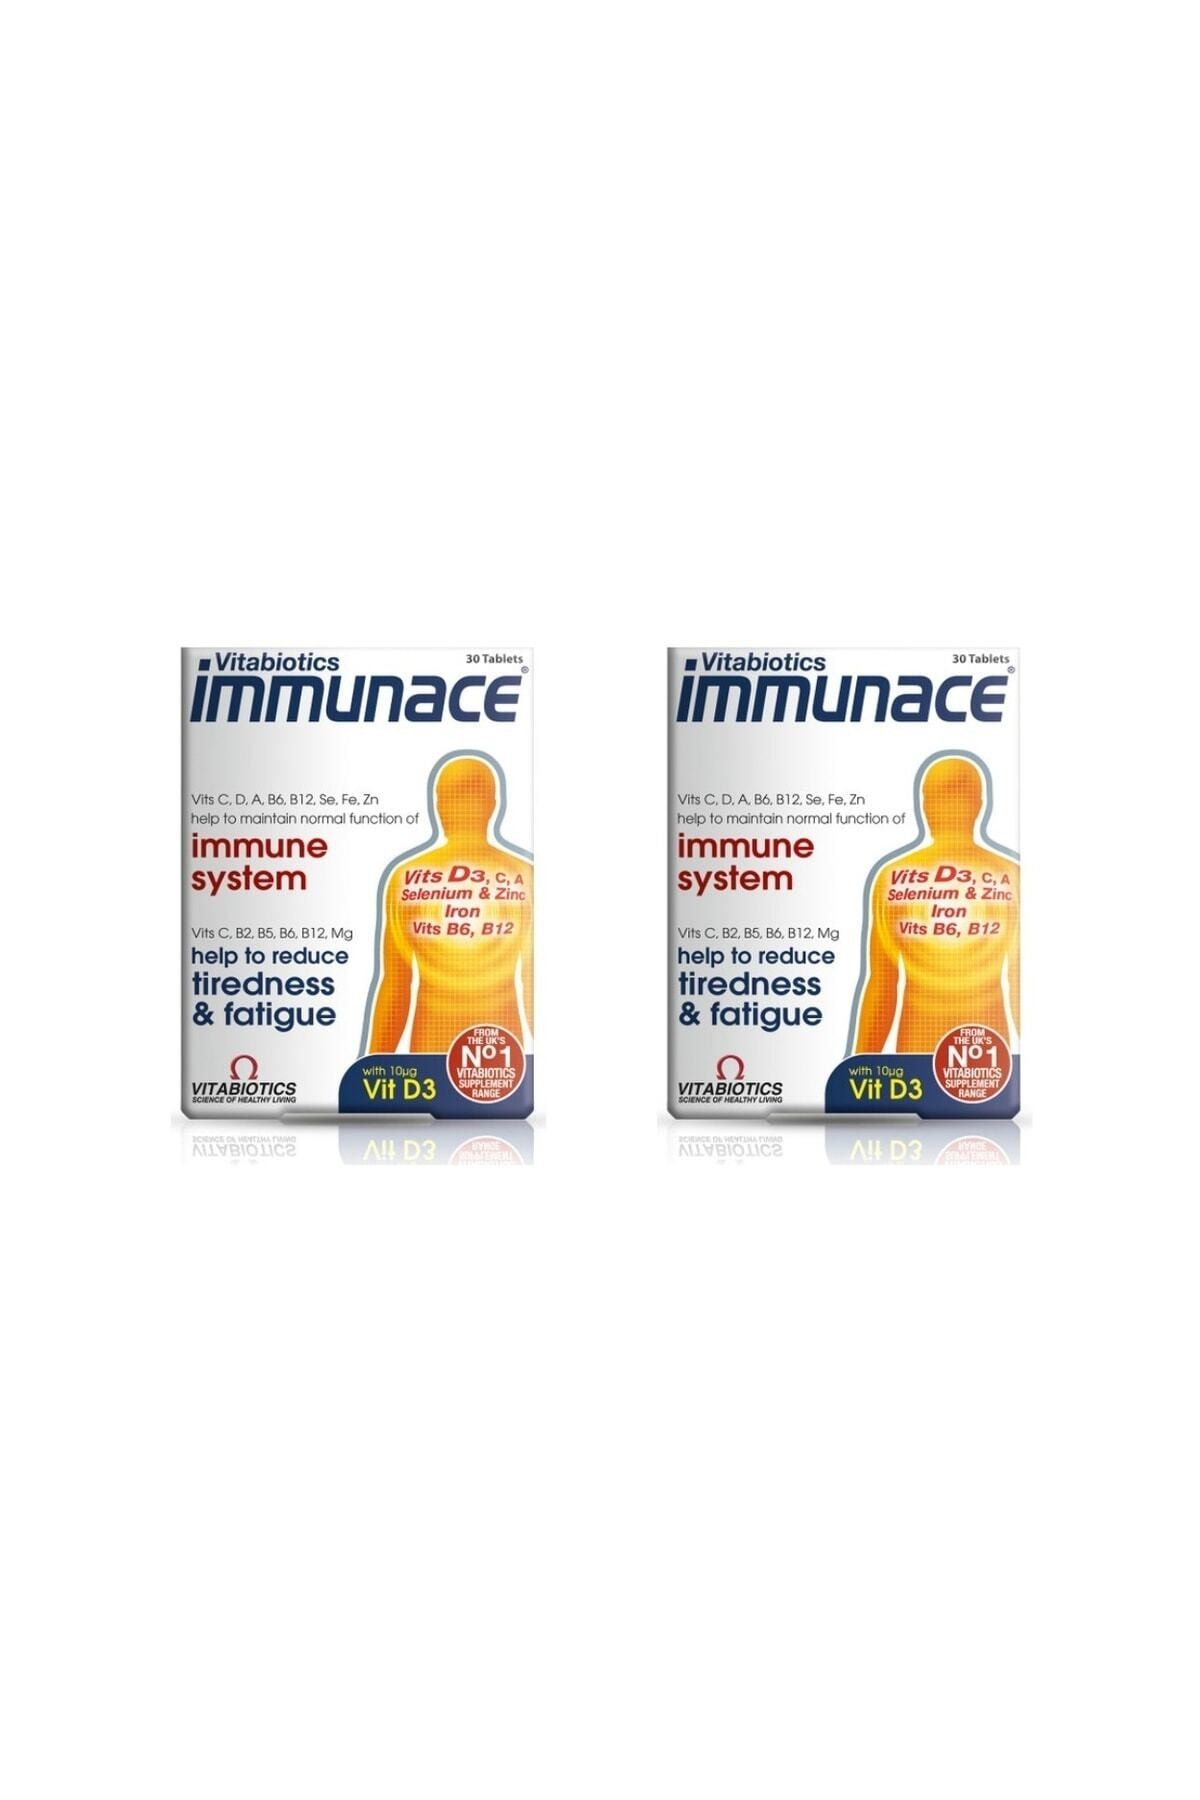 Immunace Immunace 30 Tablet 2 Adet